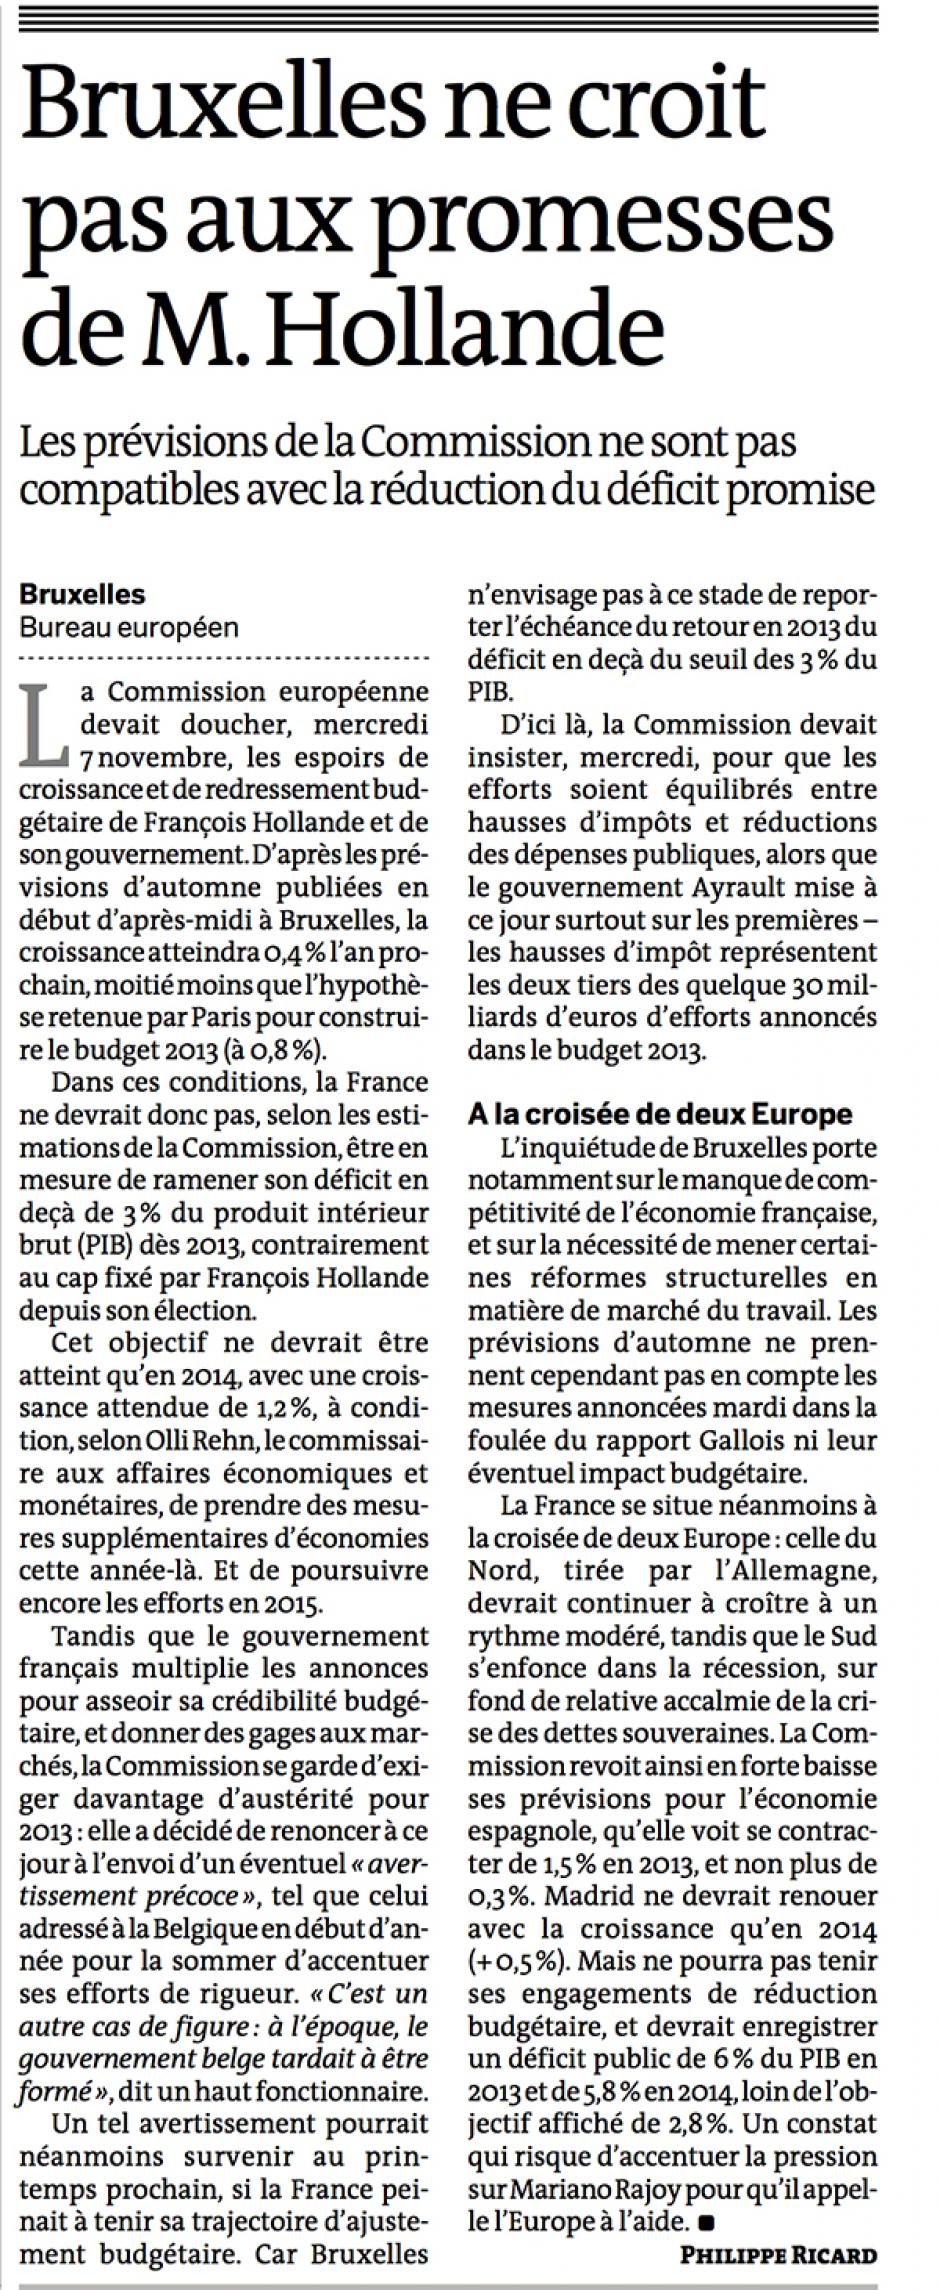 20121108-Le Monde-Bruxelles ne croit pas aux promesses de M. Hollande